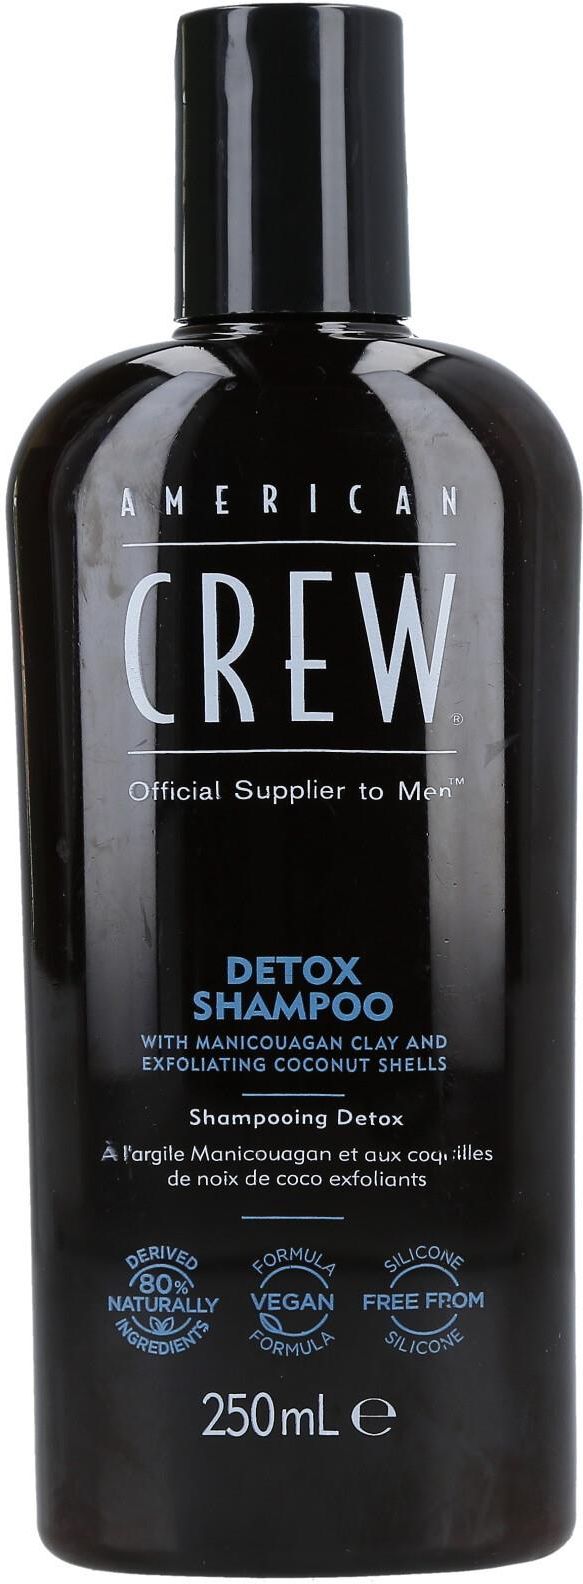 american crew szampon gdzie kupić